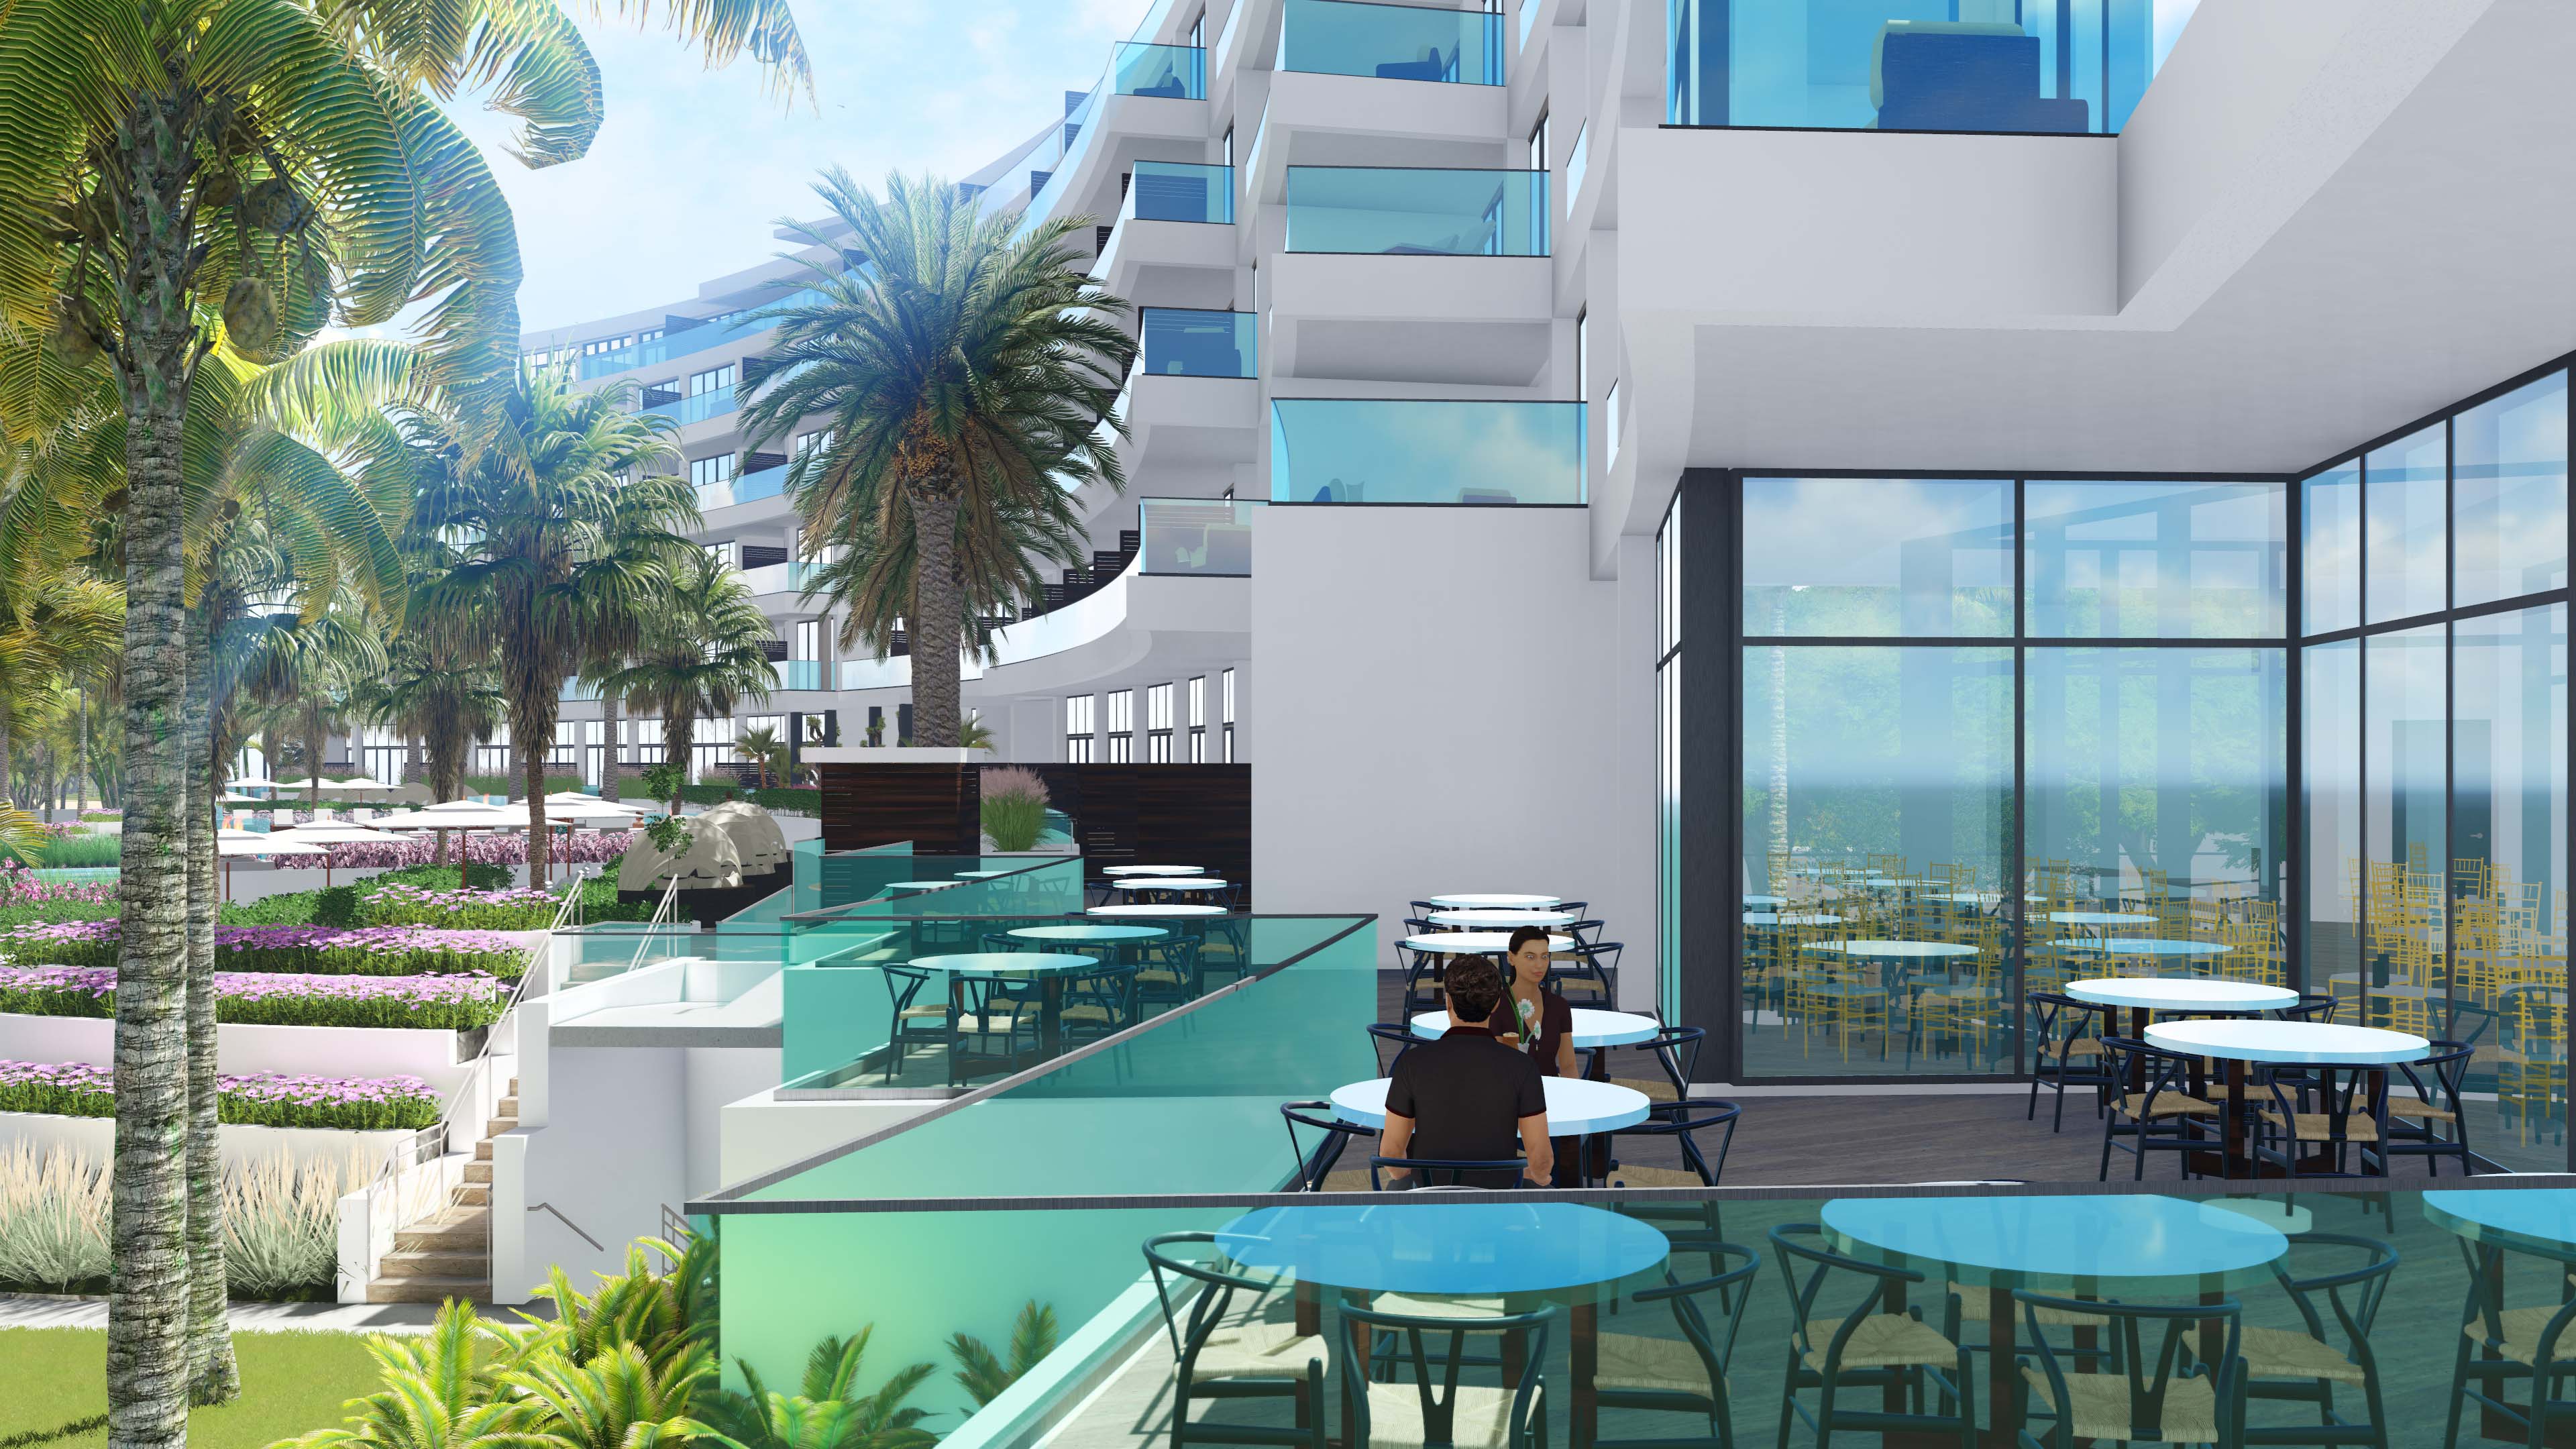 Hotel Dining - Resort Hotel Bahamas 